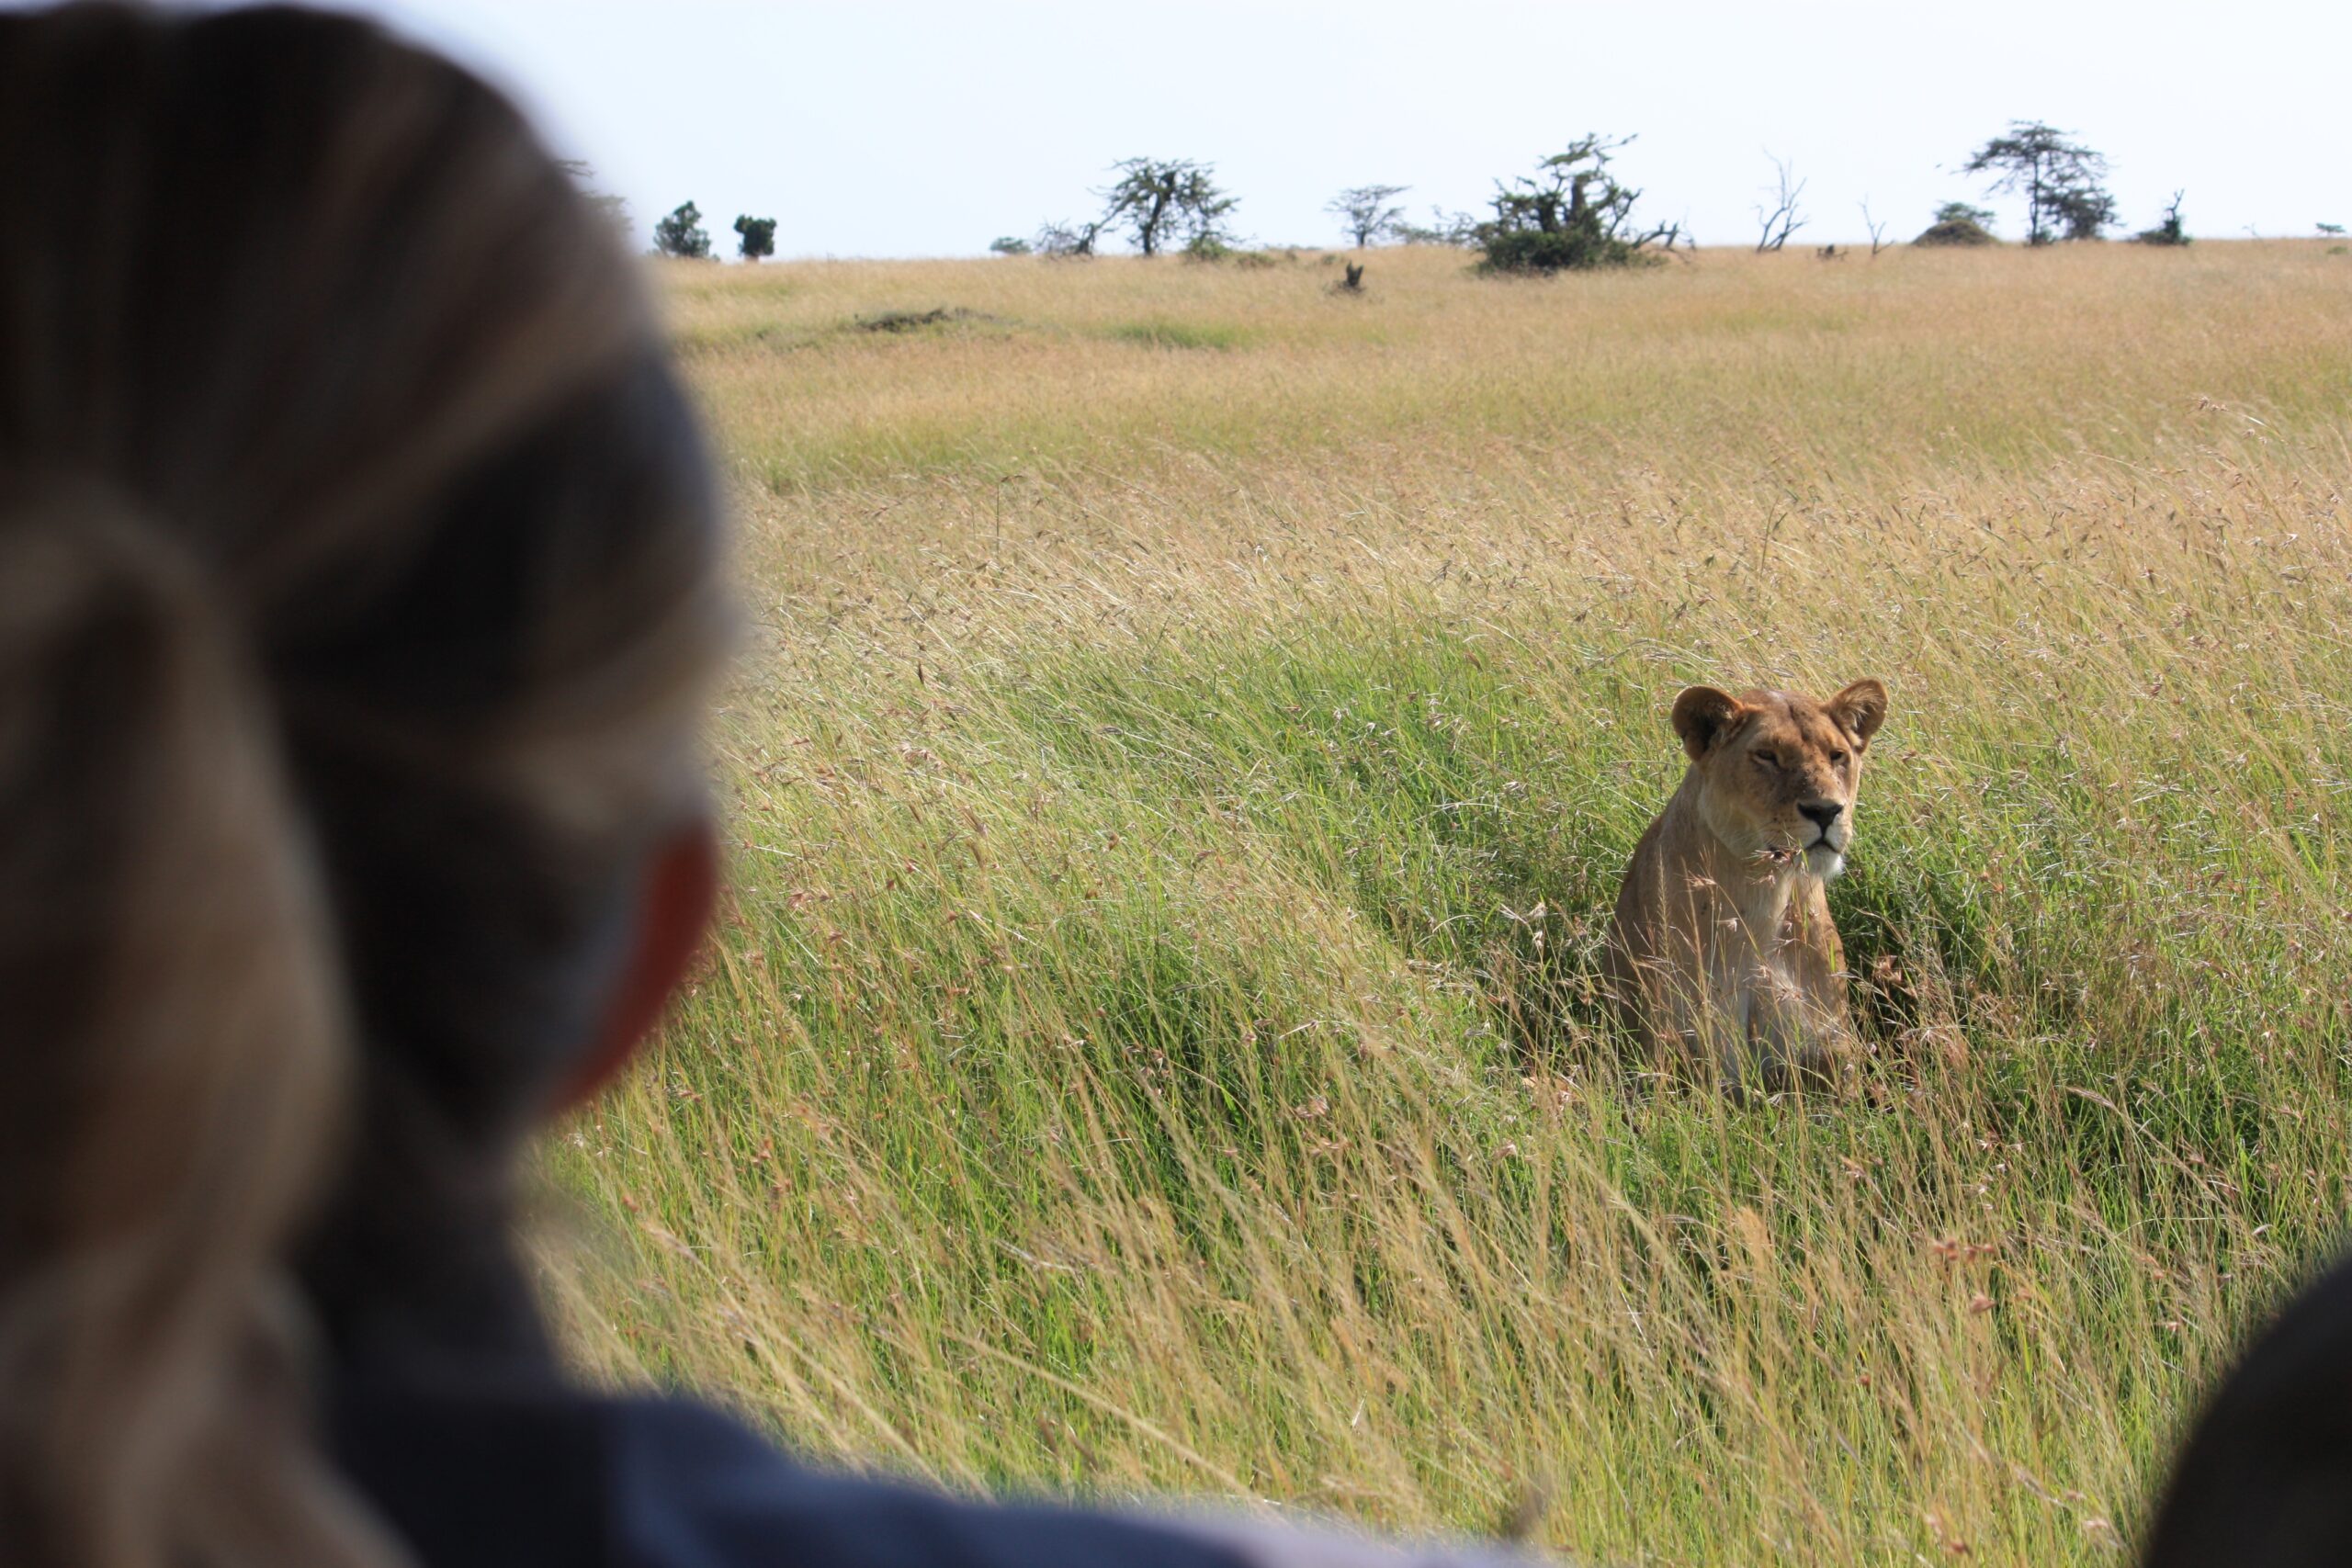 Mother-Daughter Adventure in Kenya